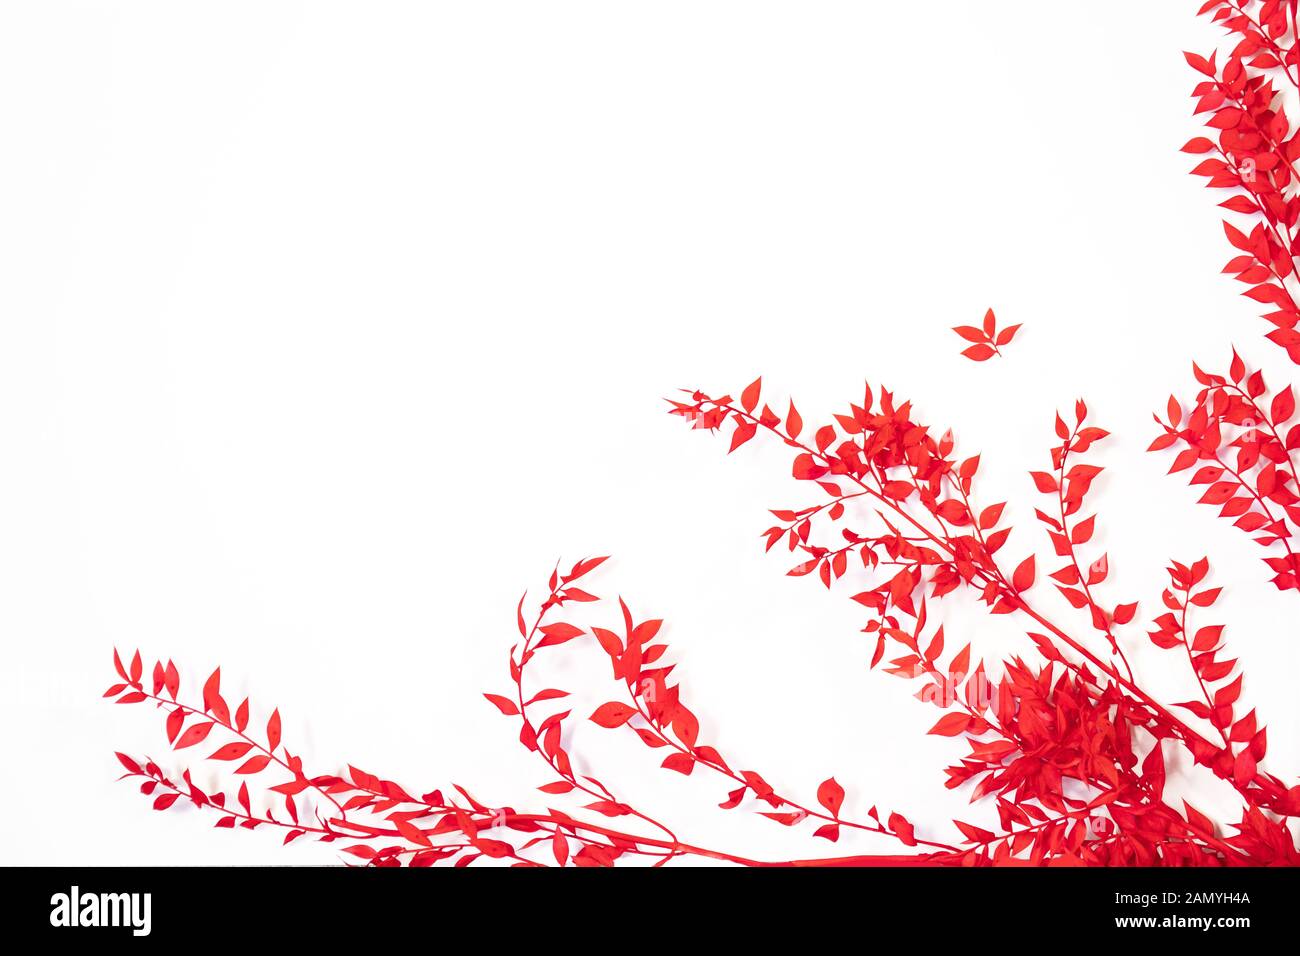 Bastidor con hojas rojas sobre un fondo blanco. Sentar planas, vista superior Foto de stock